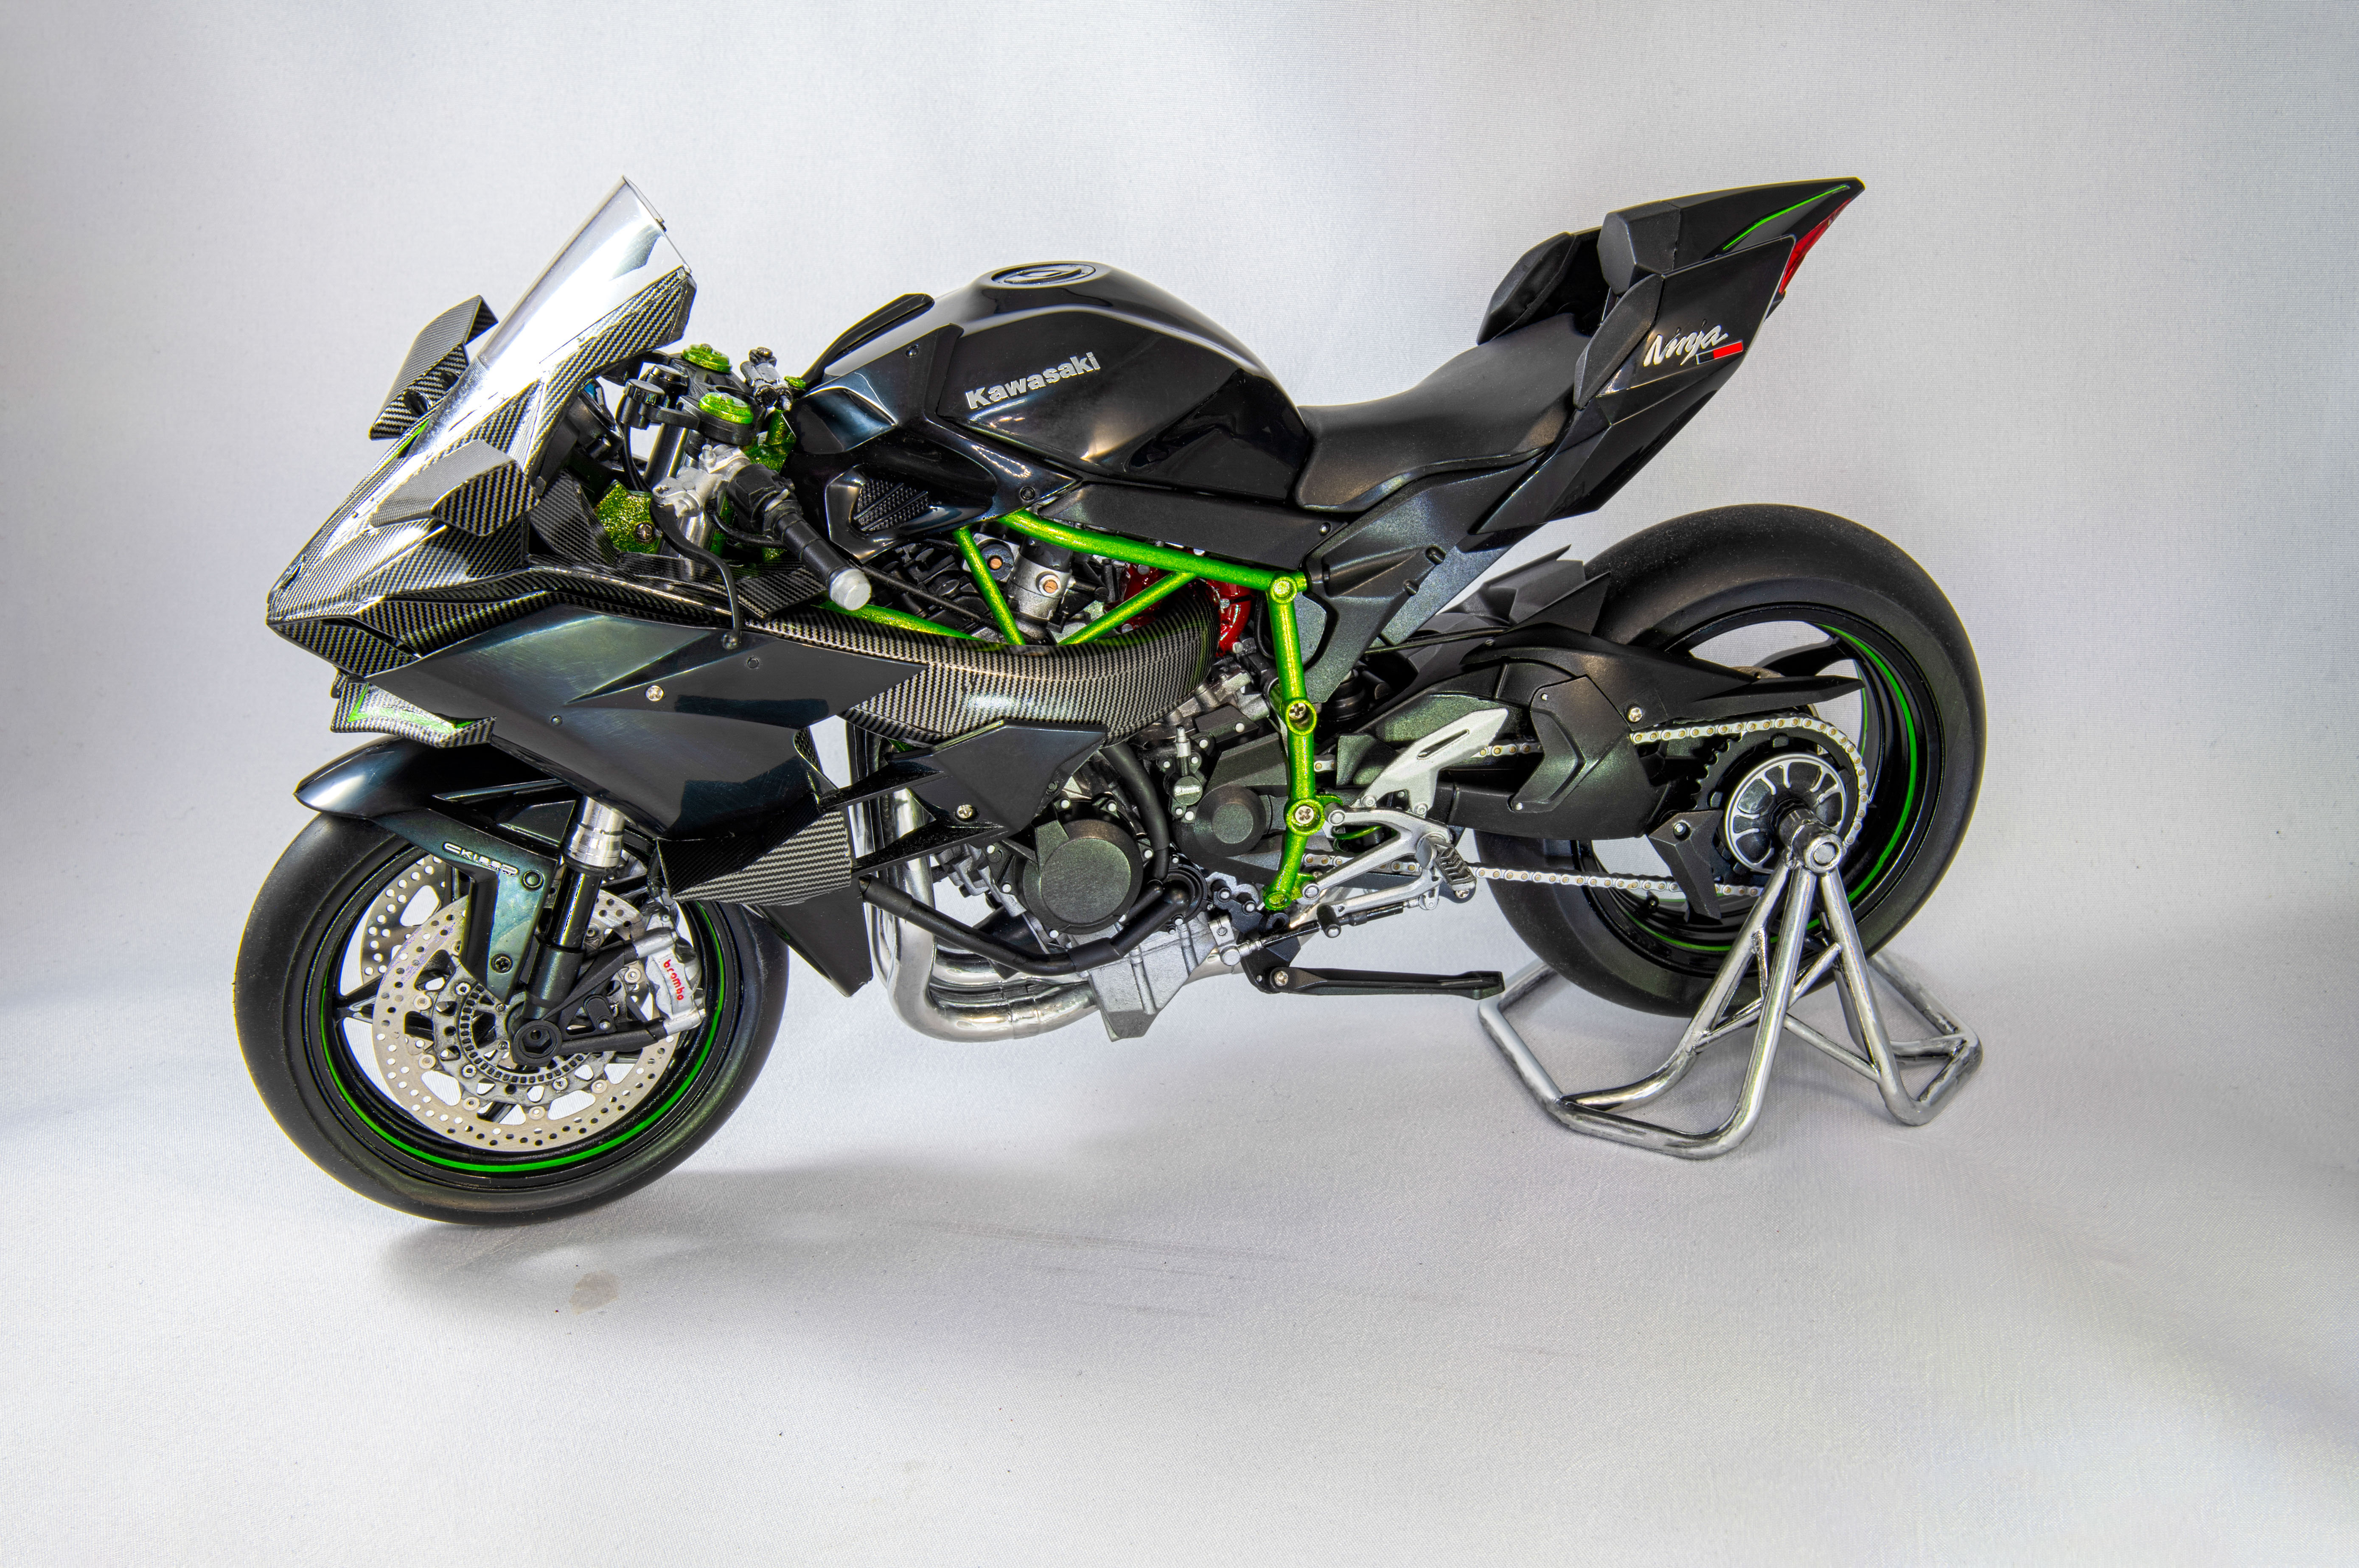 Build review of the Meng Kawasaki Ninja H2R scale model motorcycle 